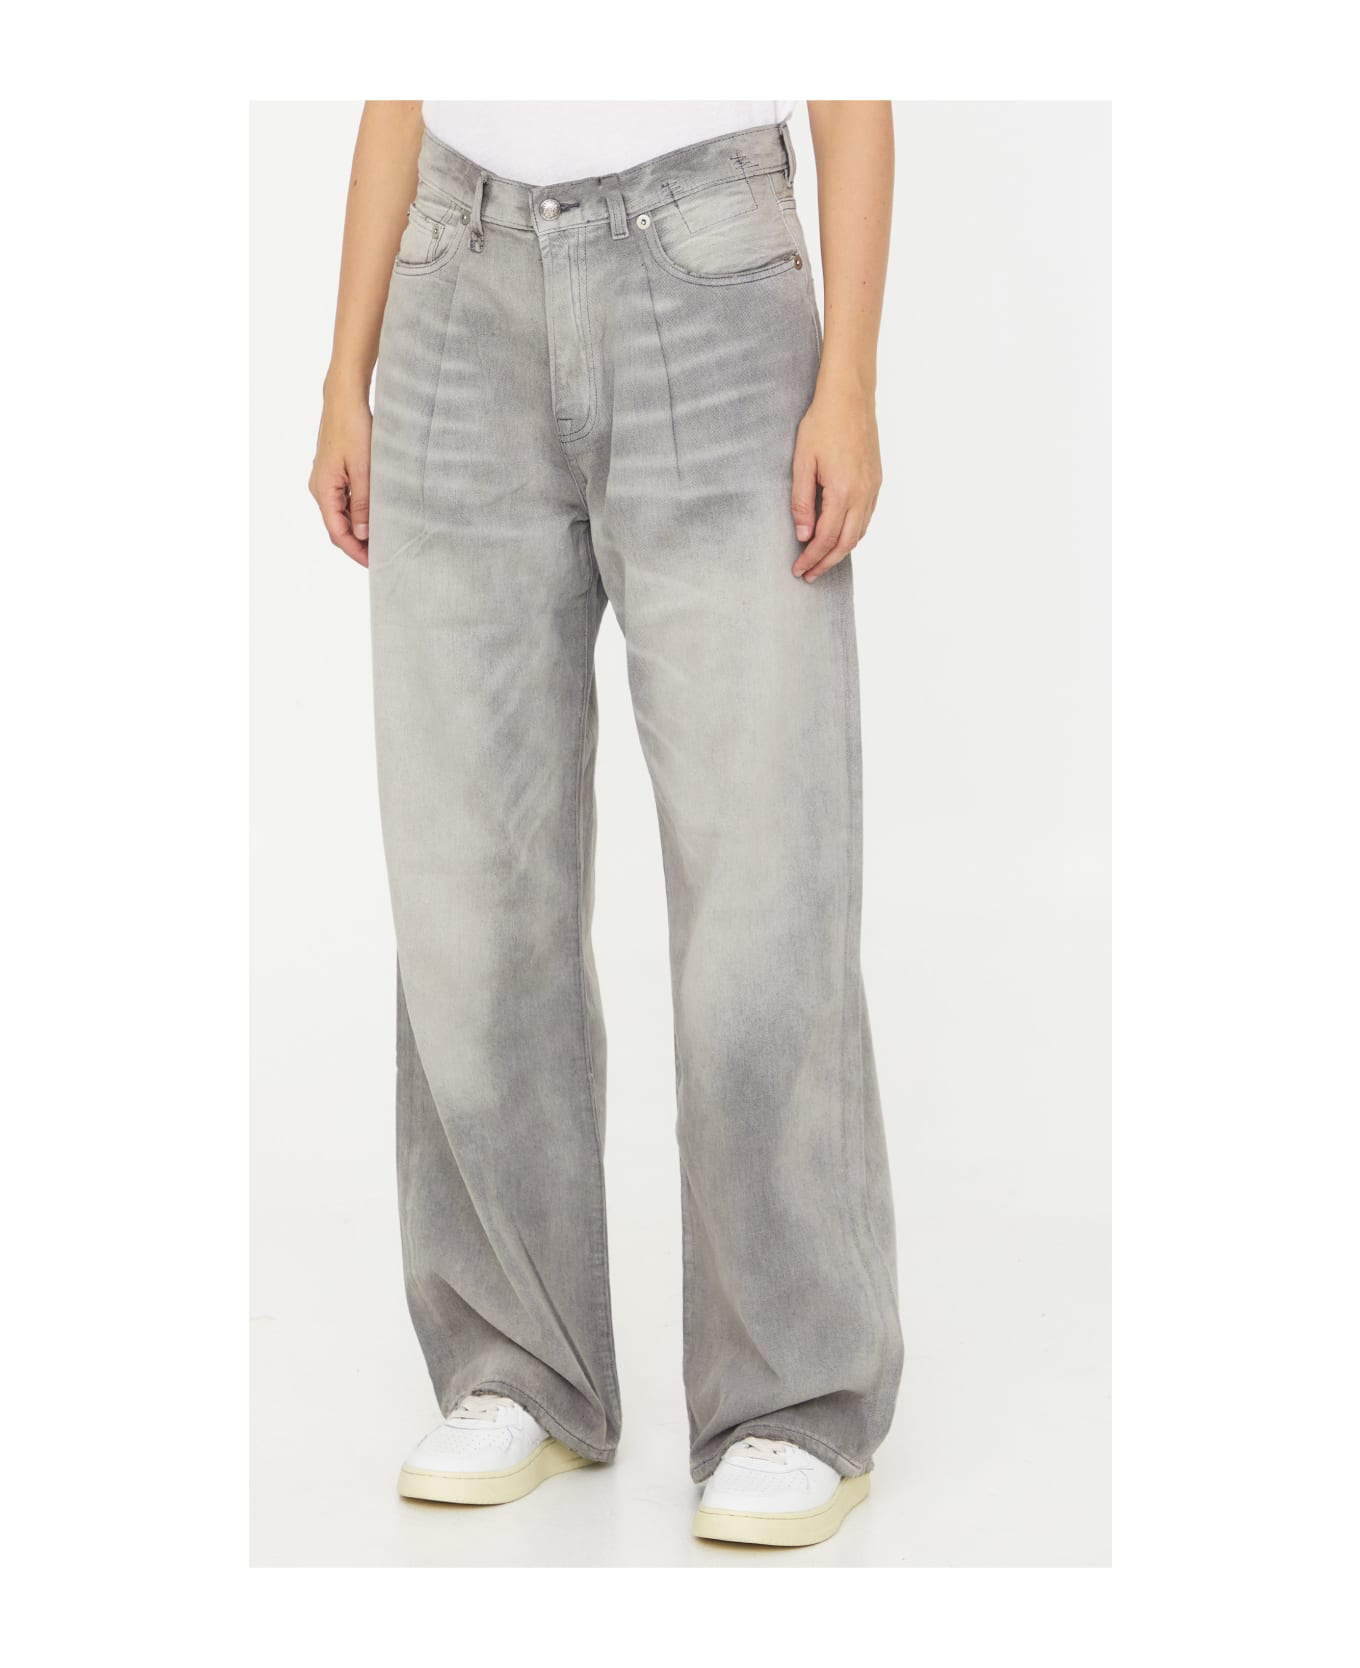 R13 Grey Denim Jeans - GREY